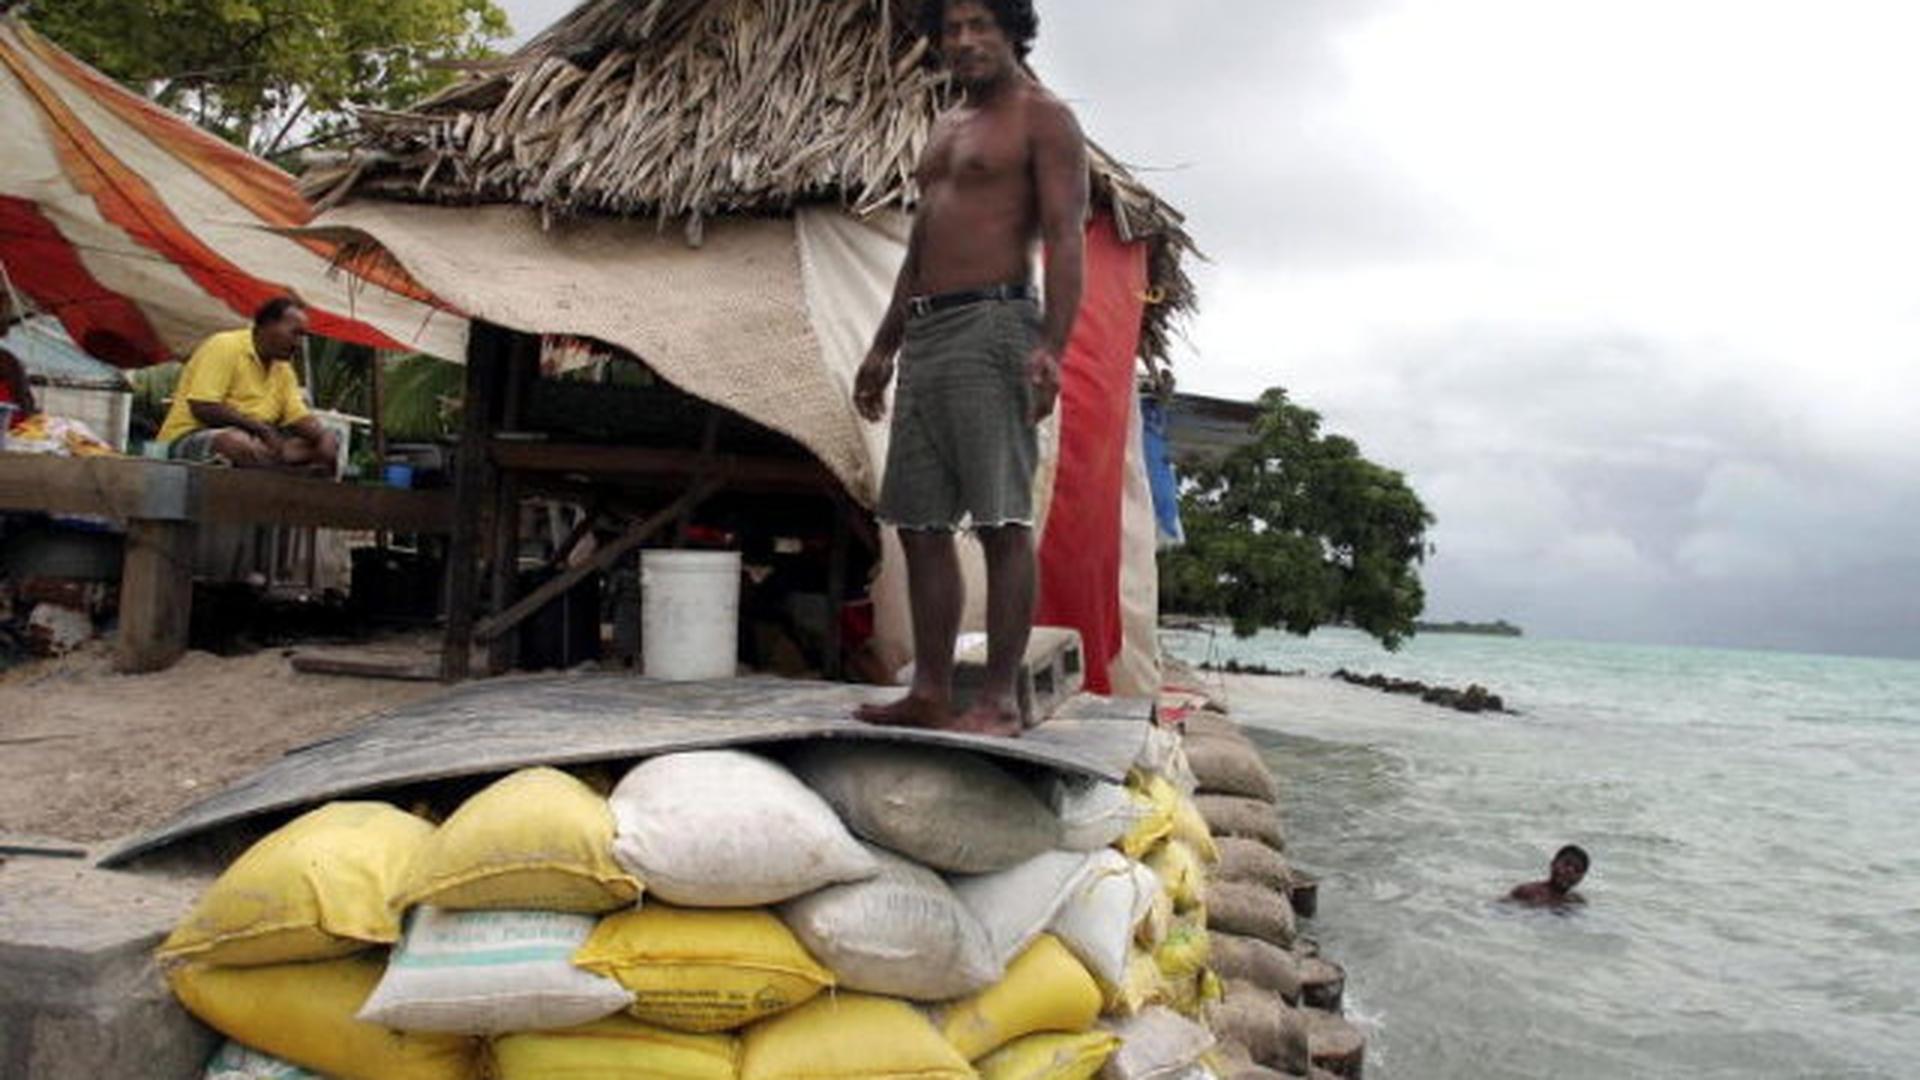 La population des îles Kiribati vit à seulement quelques mètres au-dessus du niveau de l'océan